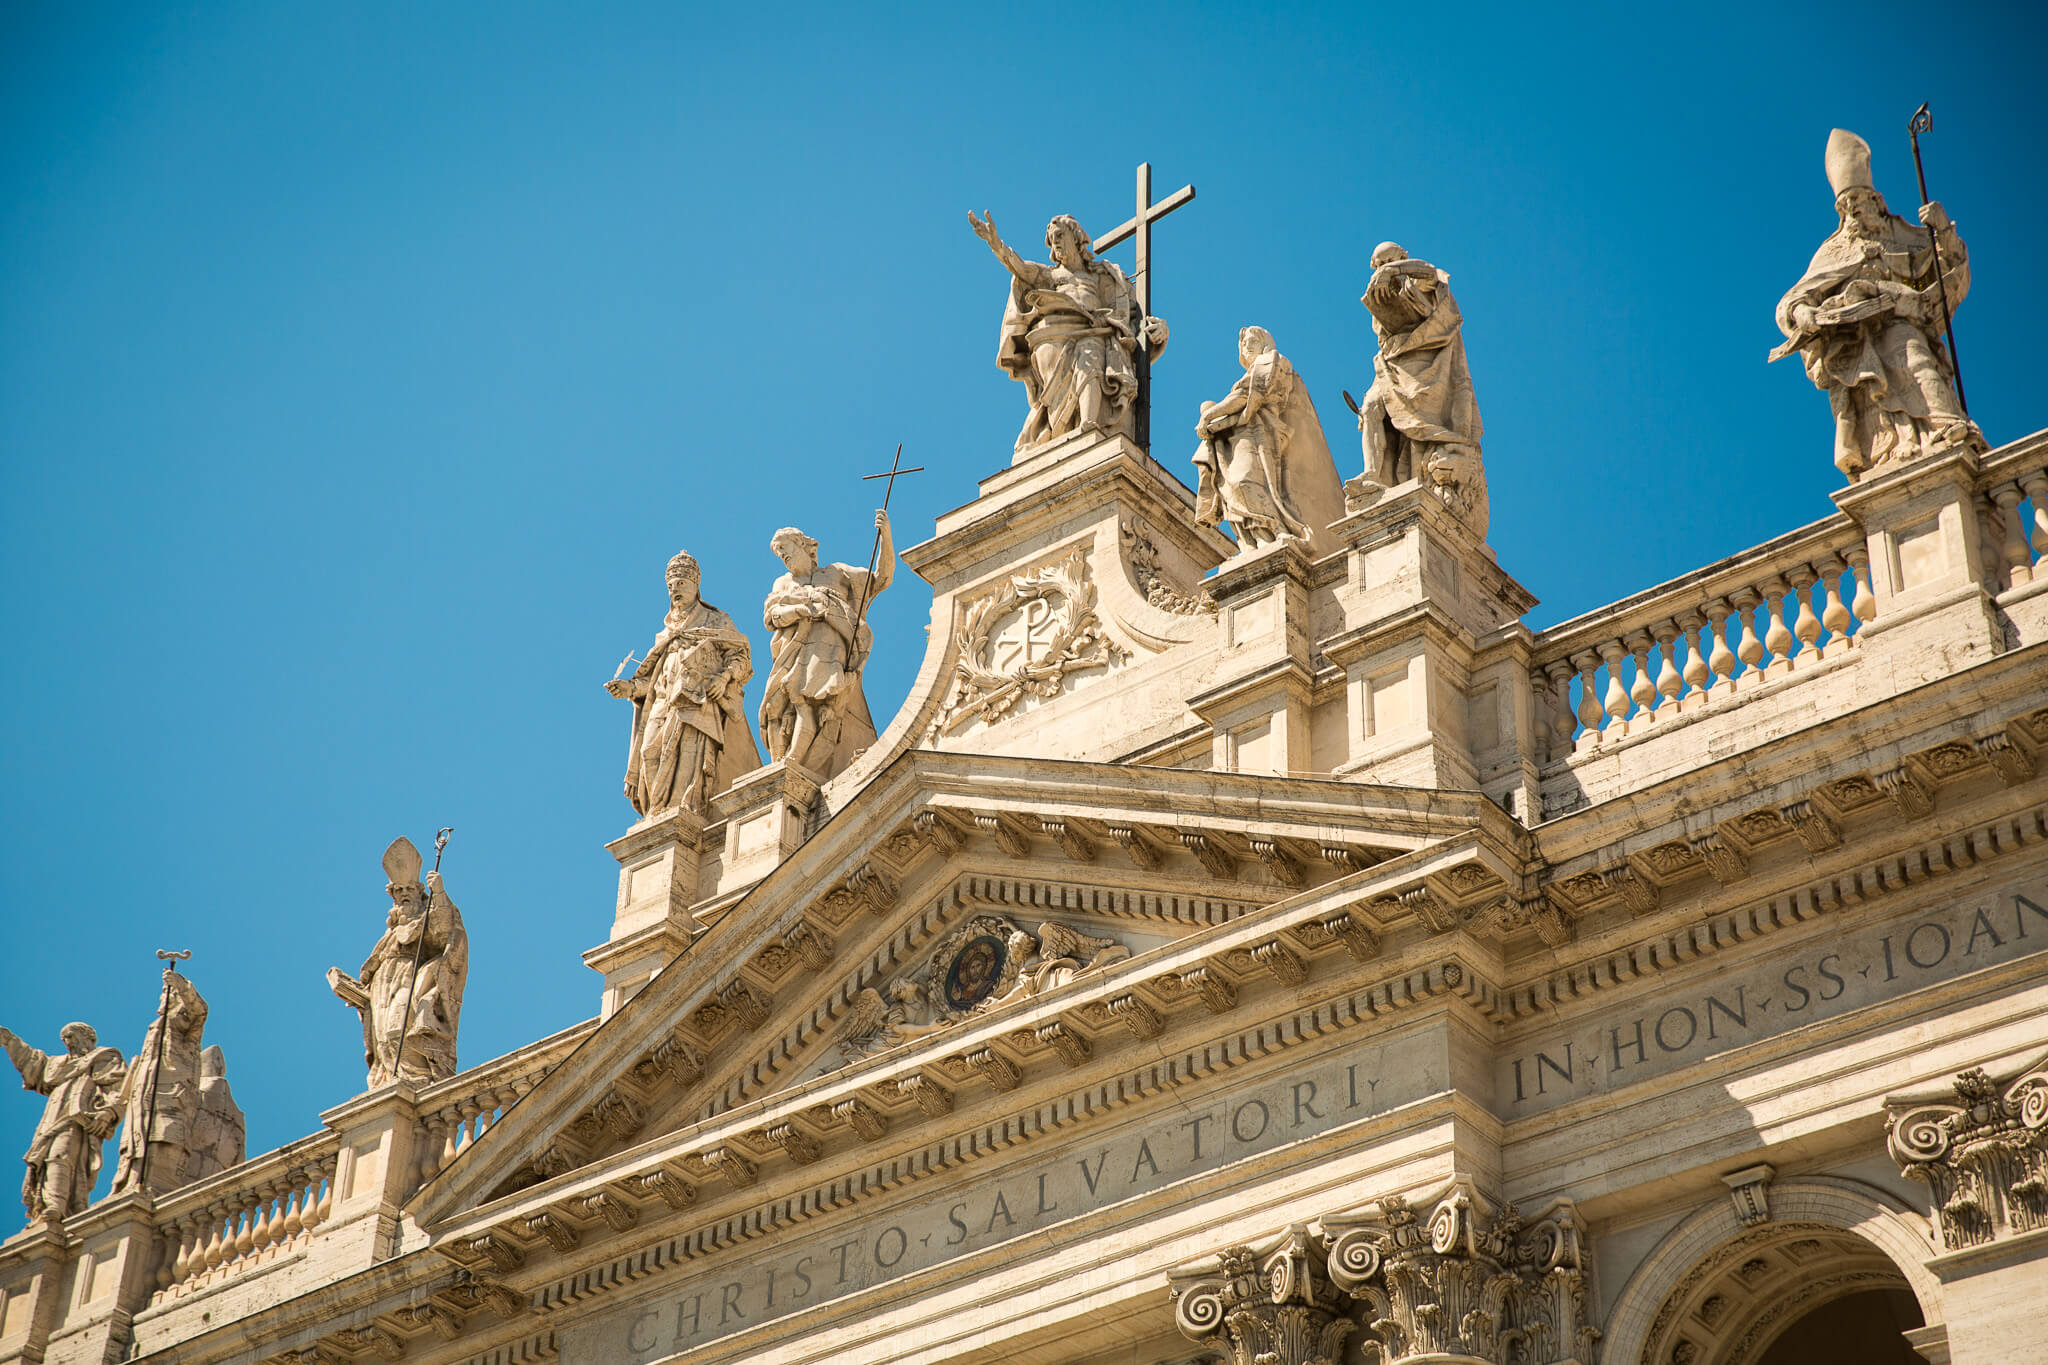 Details of the facade of Basilica di San Giovanni in Laterano